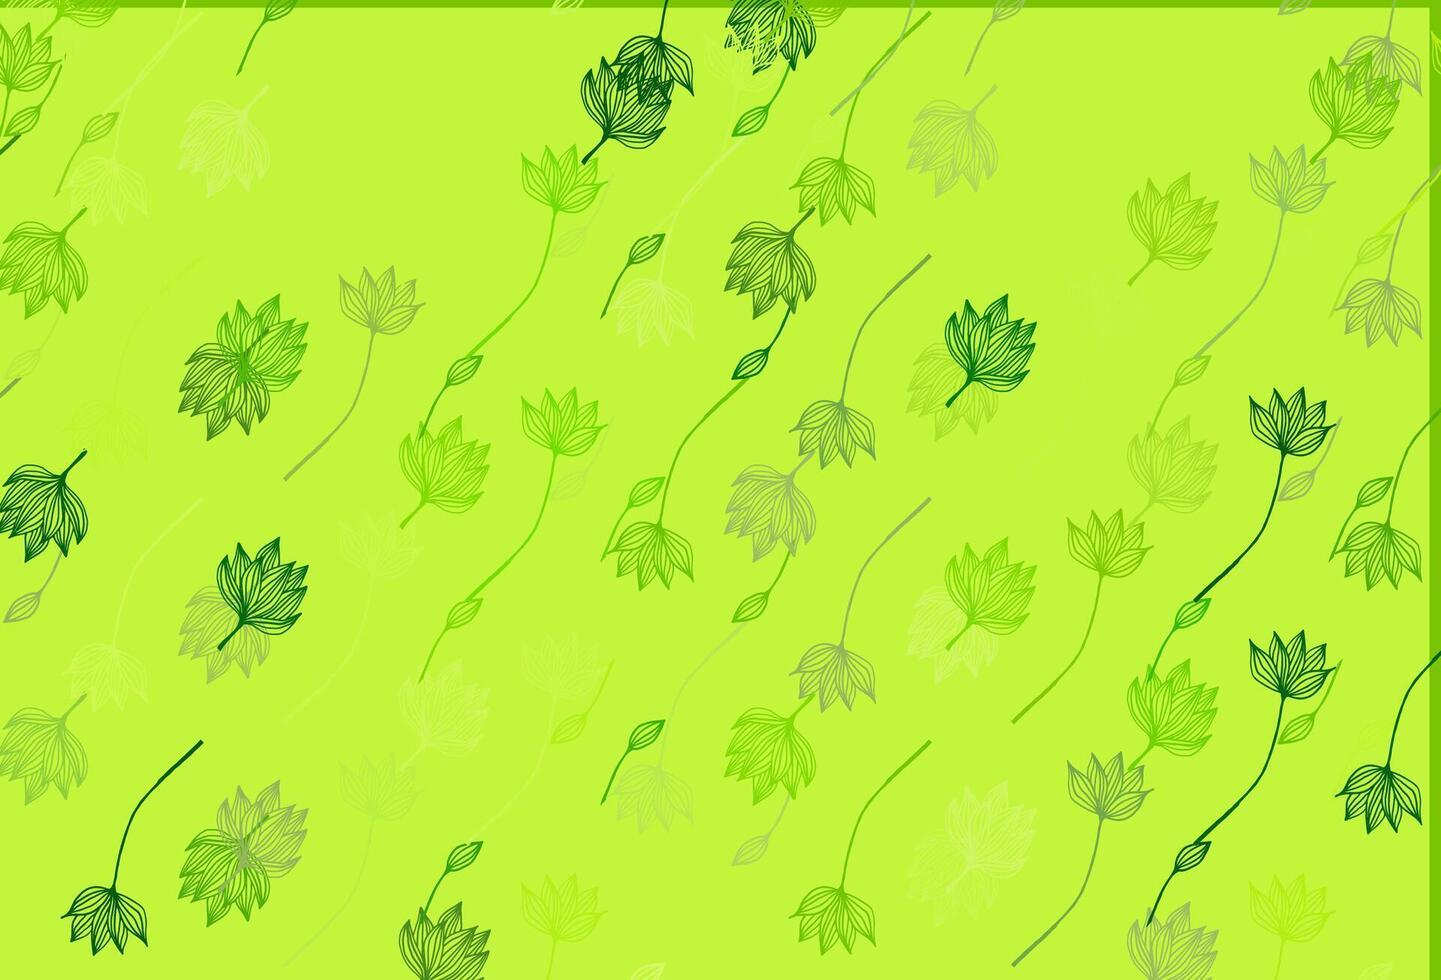 padrão de doodle de vetor verde claro.